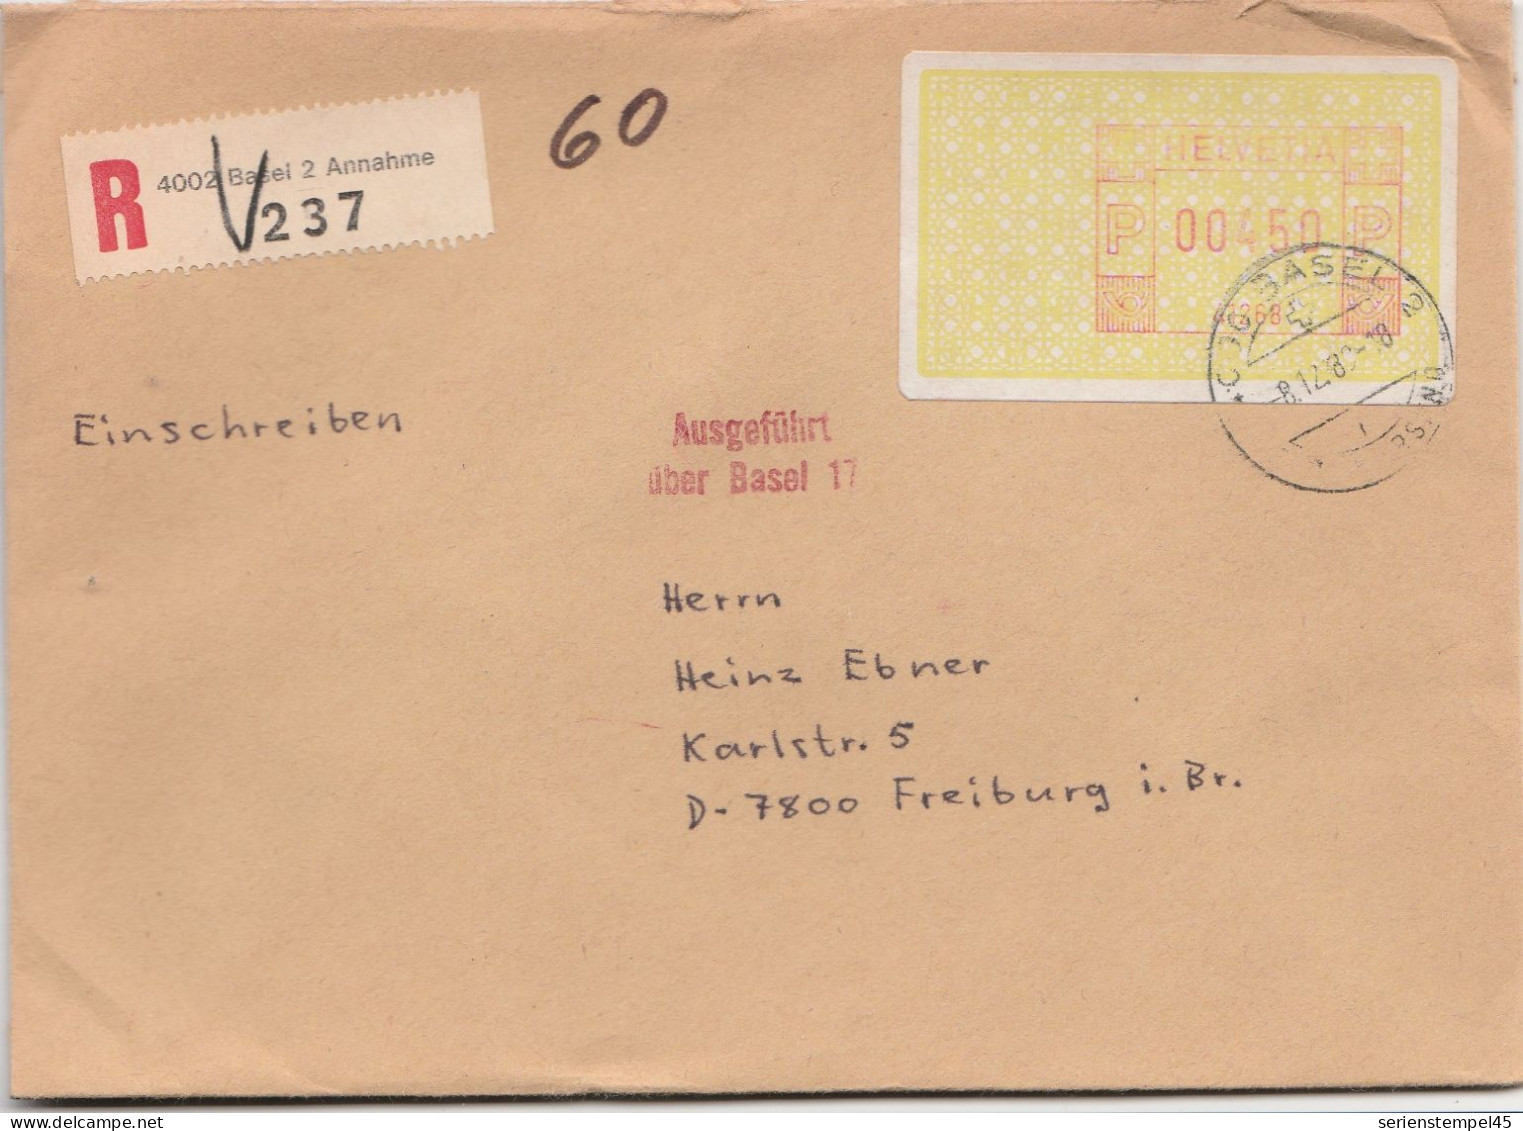 Schweiz Einschreiben Brief 4002 Basel 2 Annahme Mit Freistempel 41268 Porto 450 P 1989 - Máquinas De Franquear